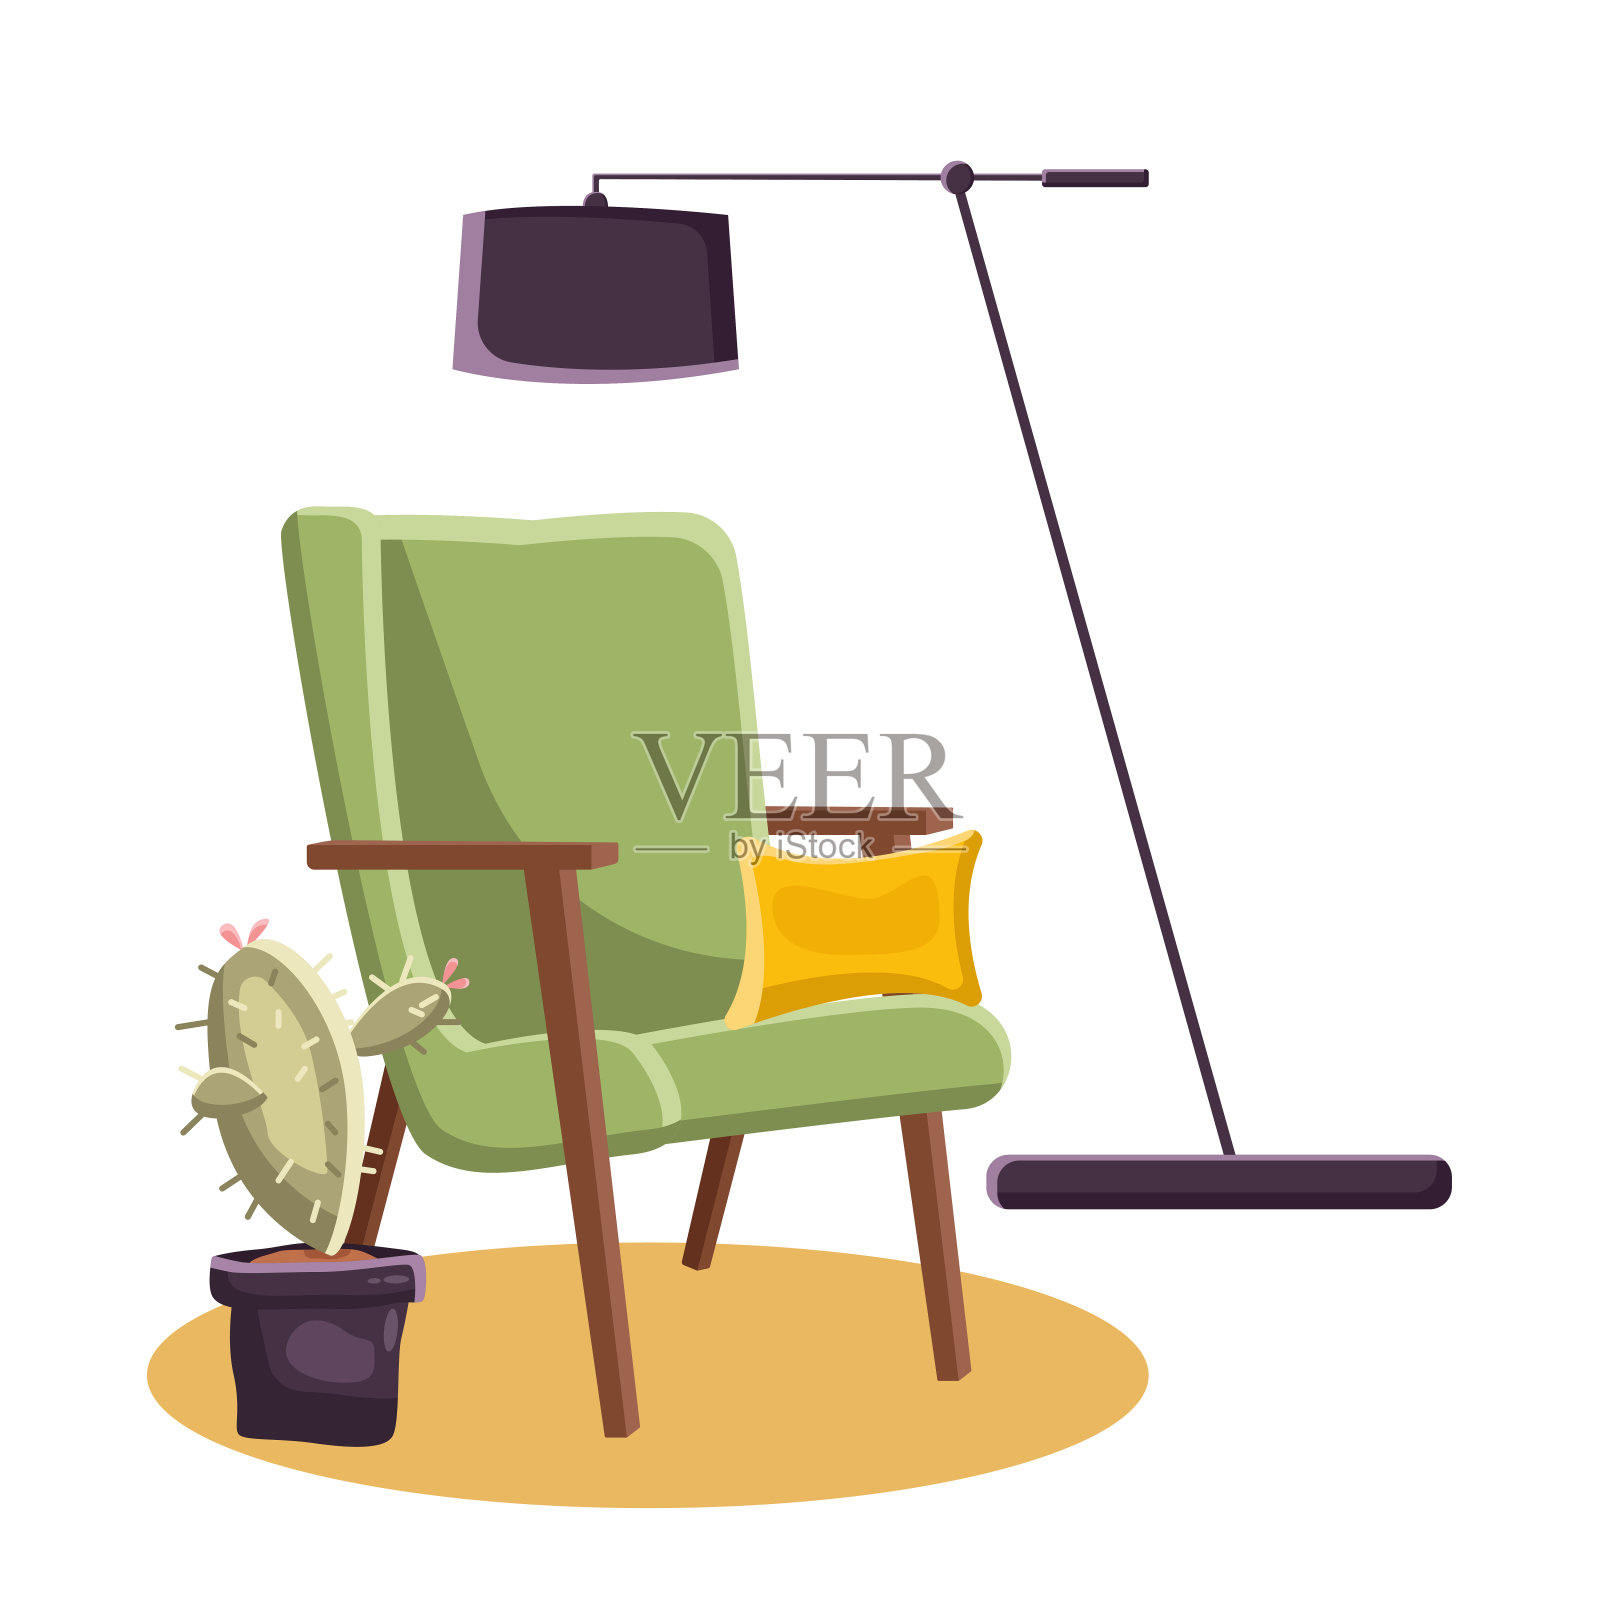 复古风格的椅子与仙人掌和落地灯室内向量插画图片素材